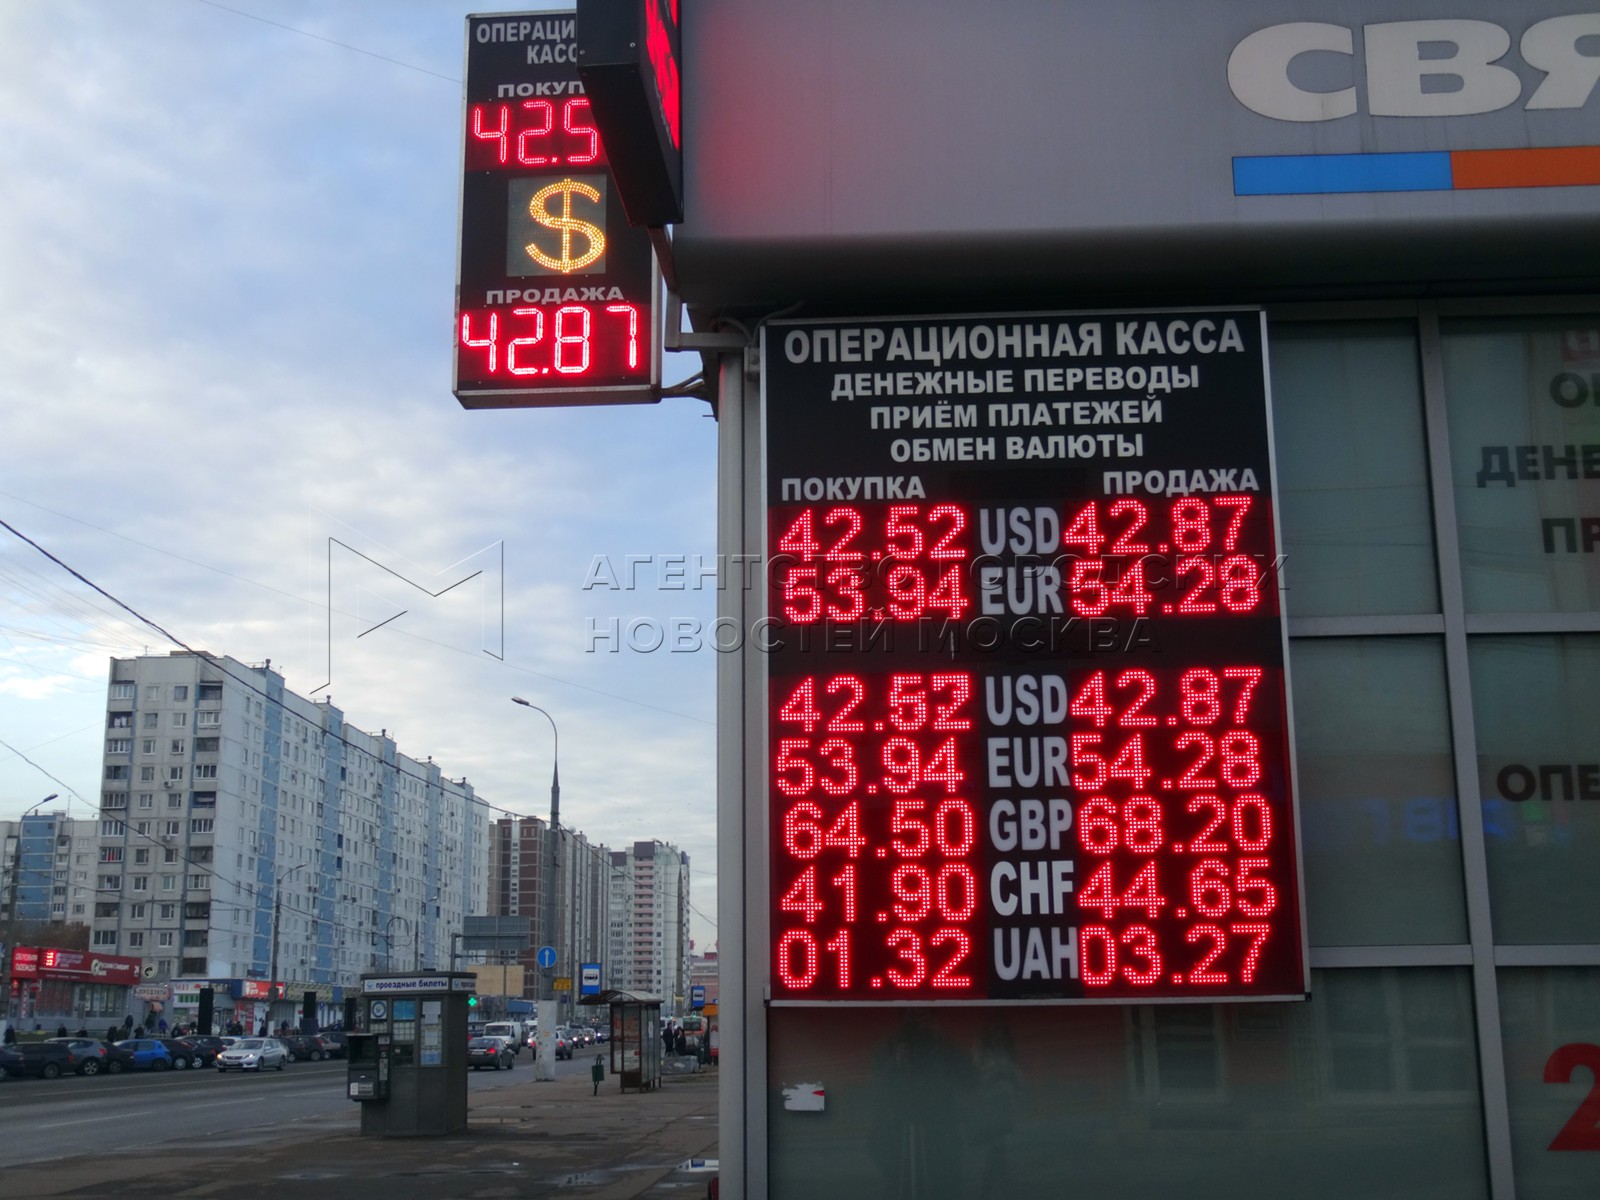 Обмен валюты москва в обменных пунктах юнион пэй мир